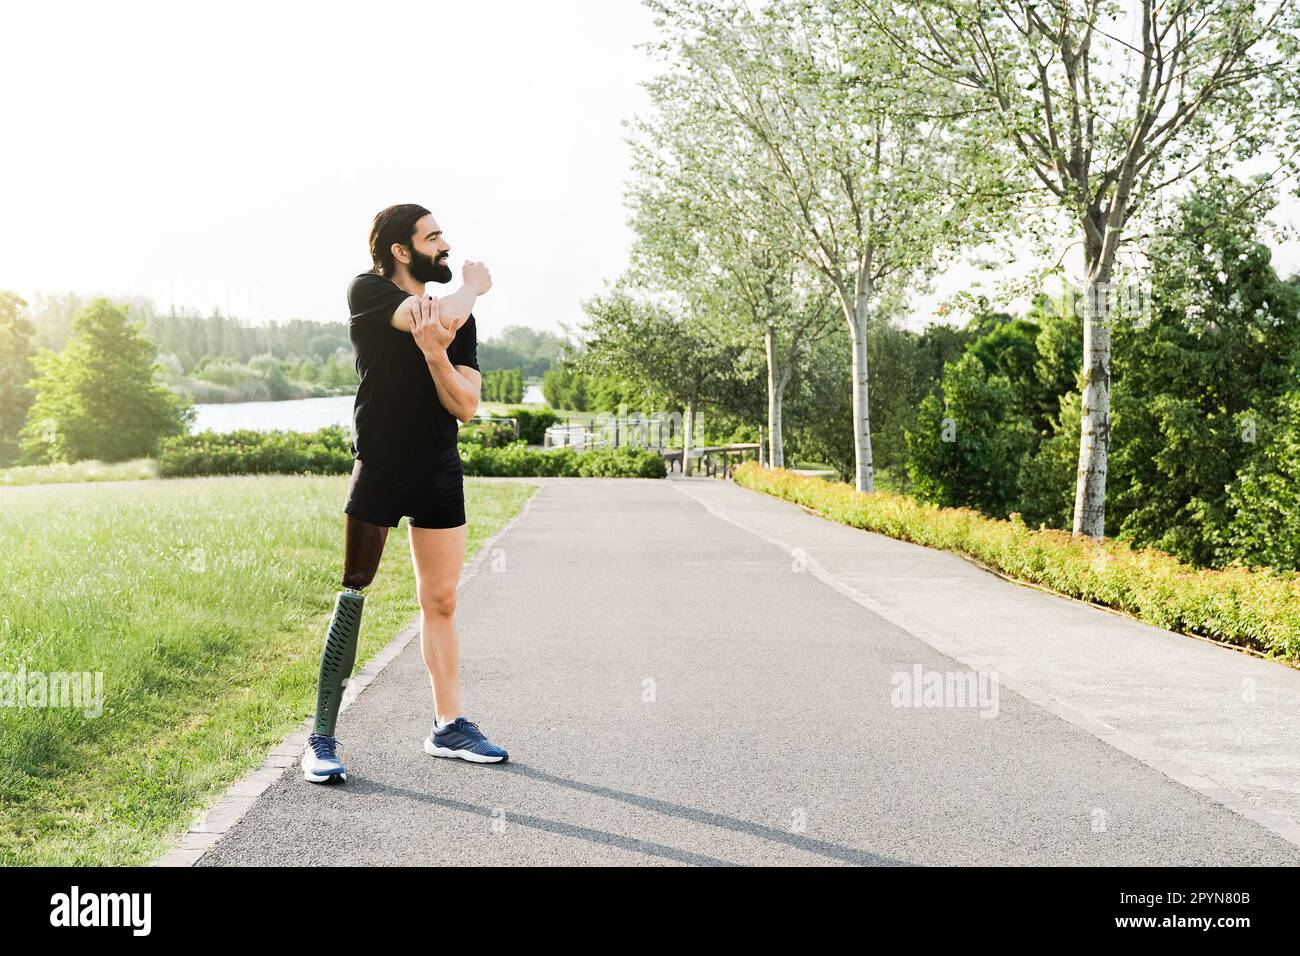 Sportler mit Beinprothesen-Dehnung vor sportlicher Routine in Park City - körperliche Behinderung, gesundes Lifestyle-Konzept Stockfoto